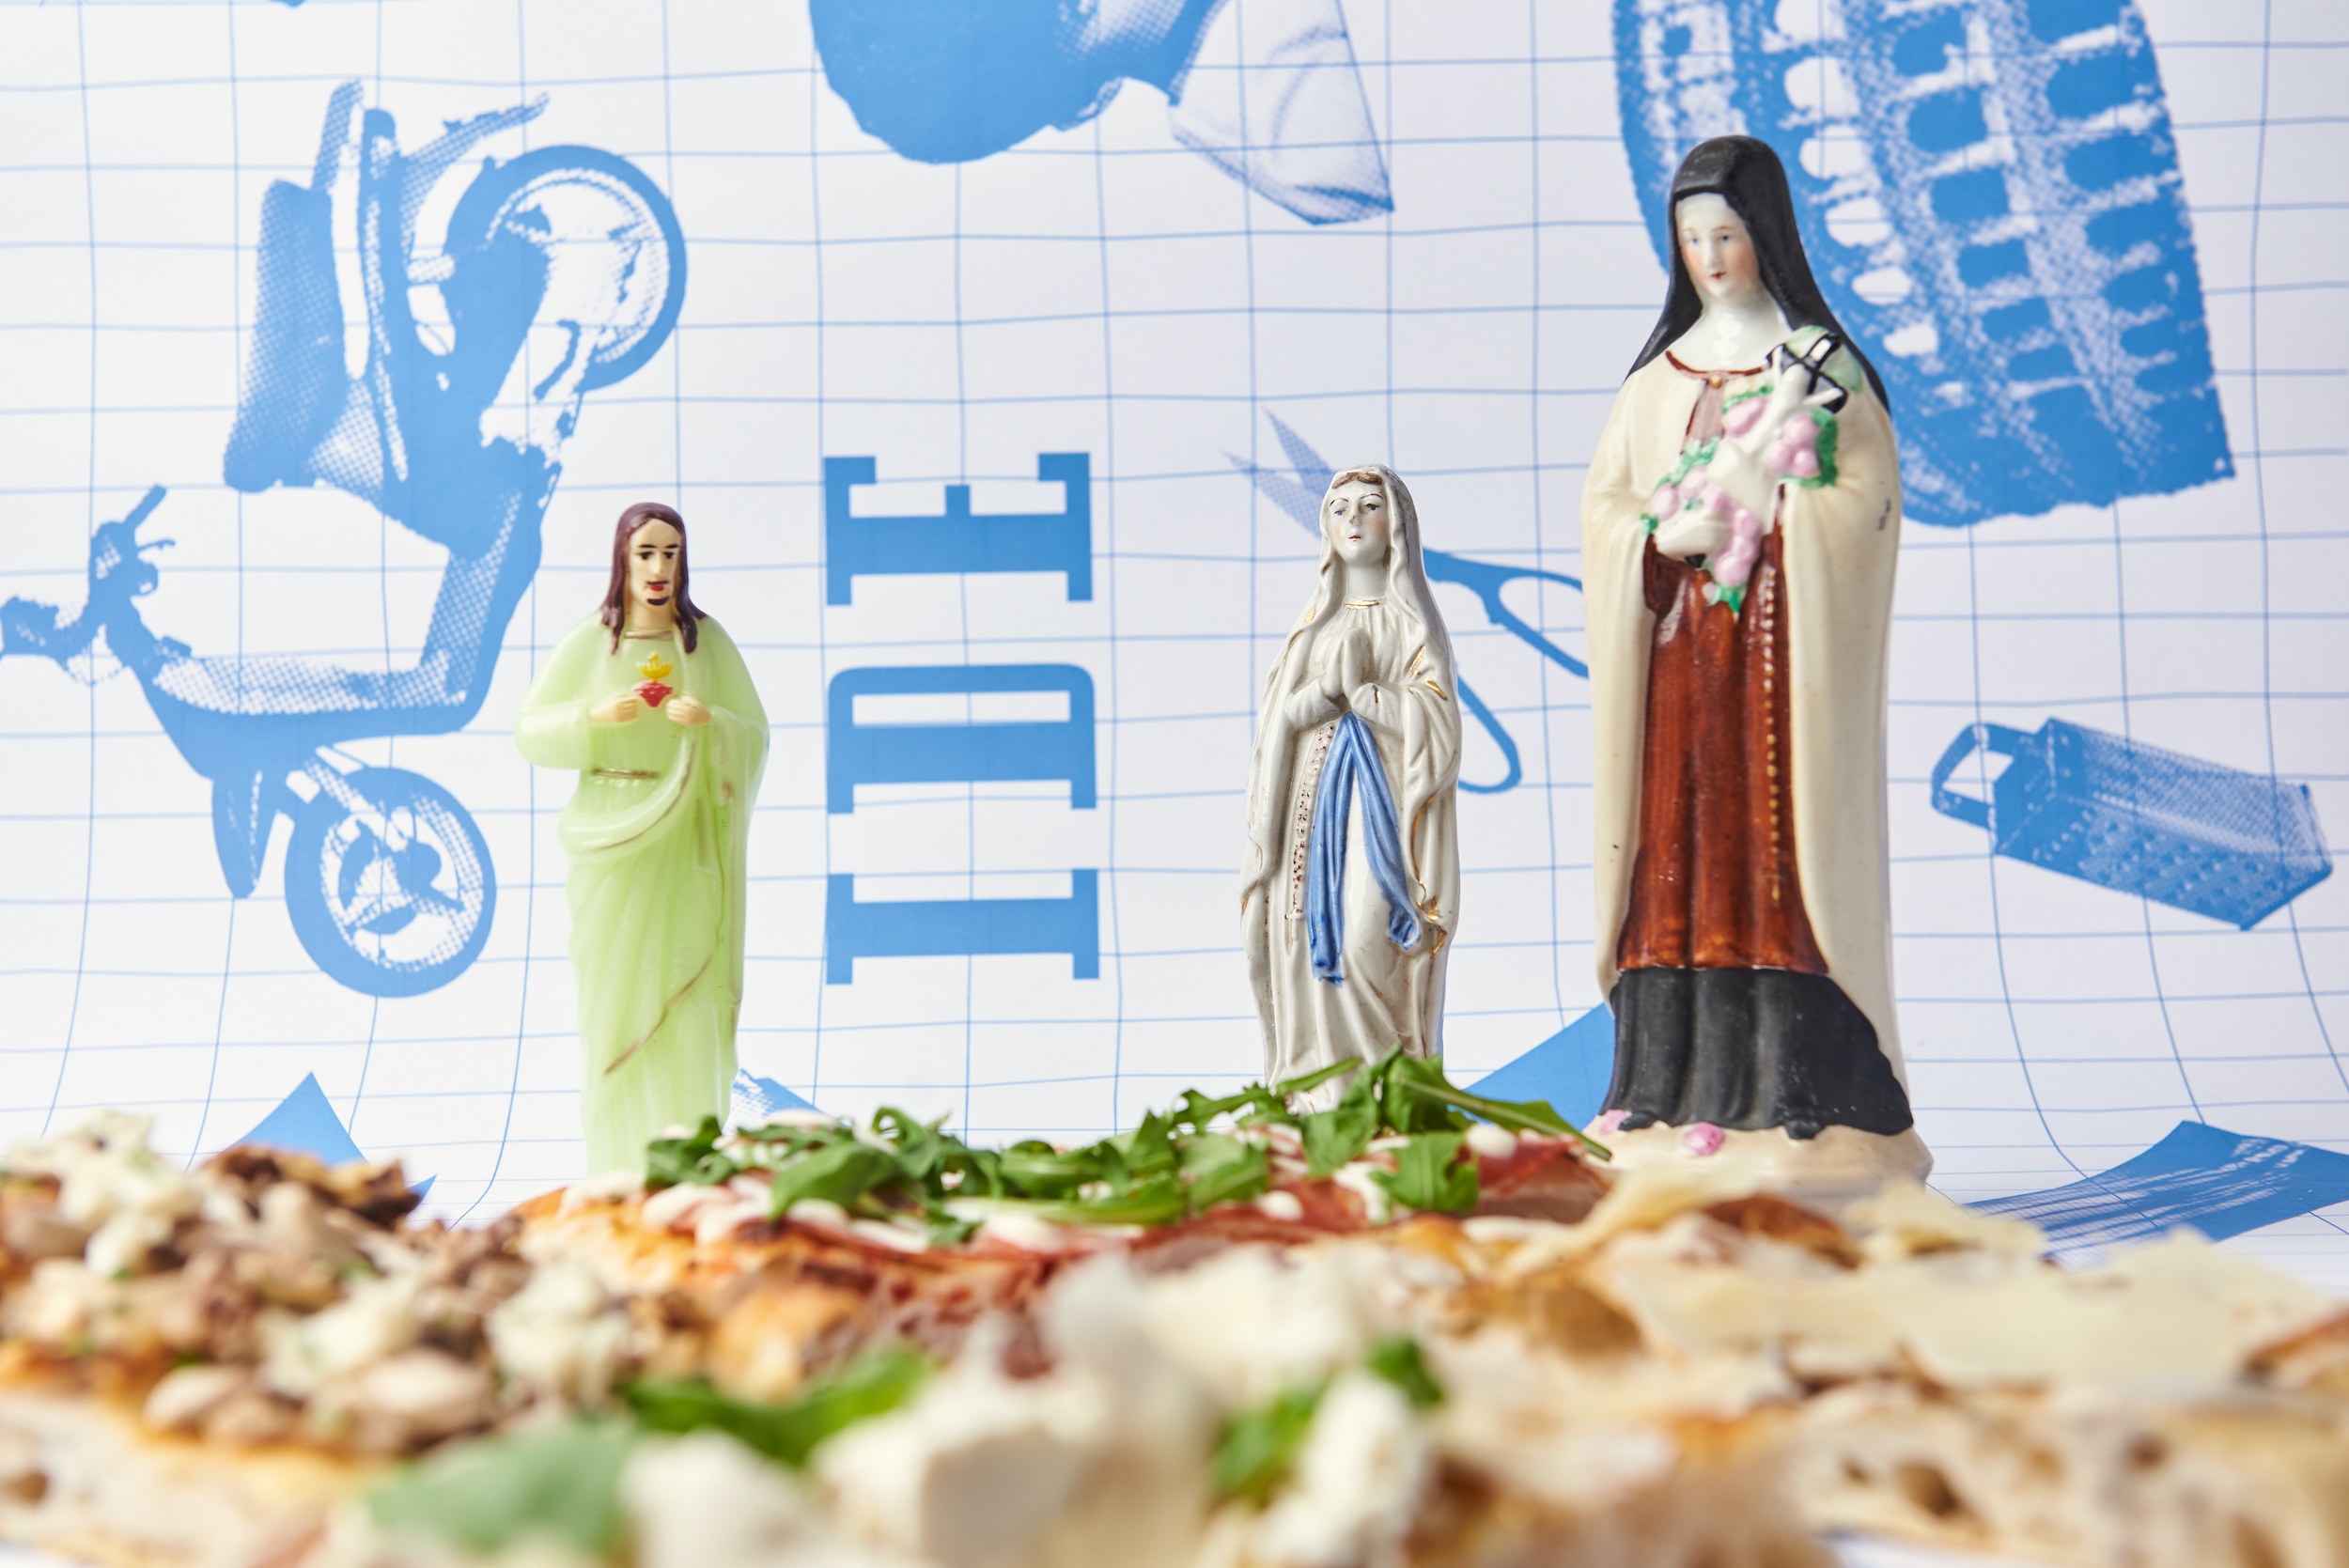 Az IDE római pizzái és a kihagyhatatlan kegytárgyak